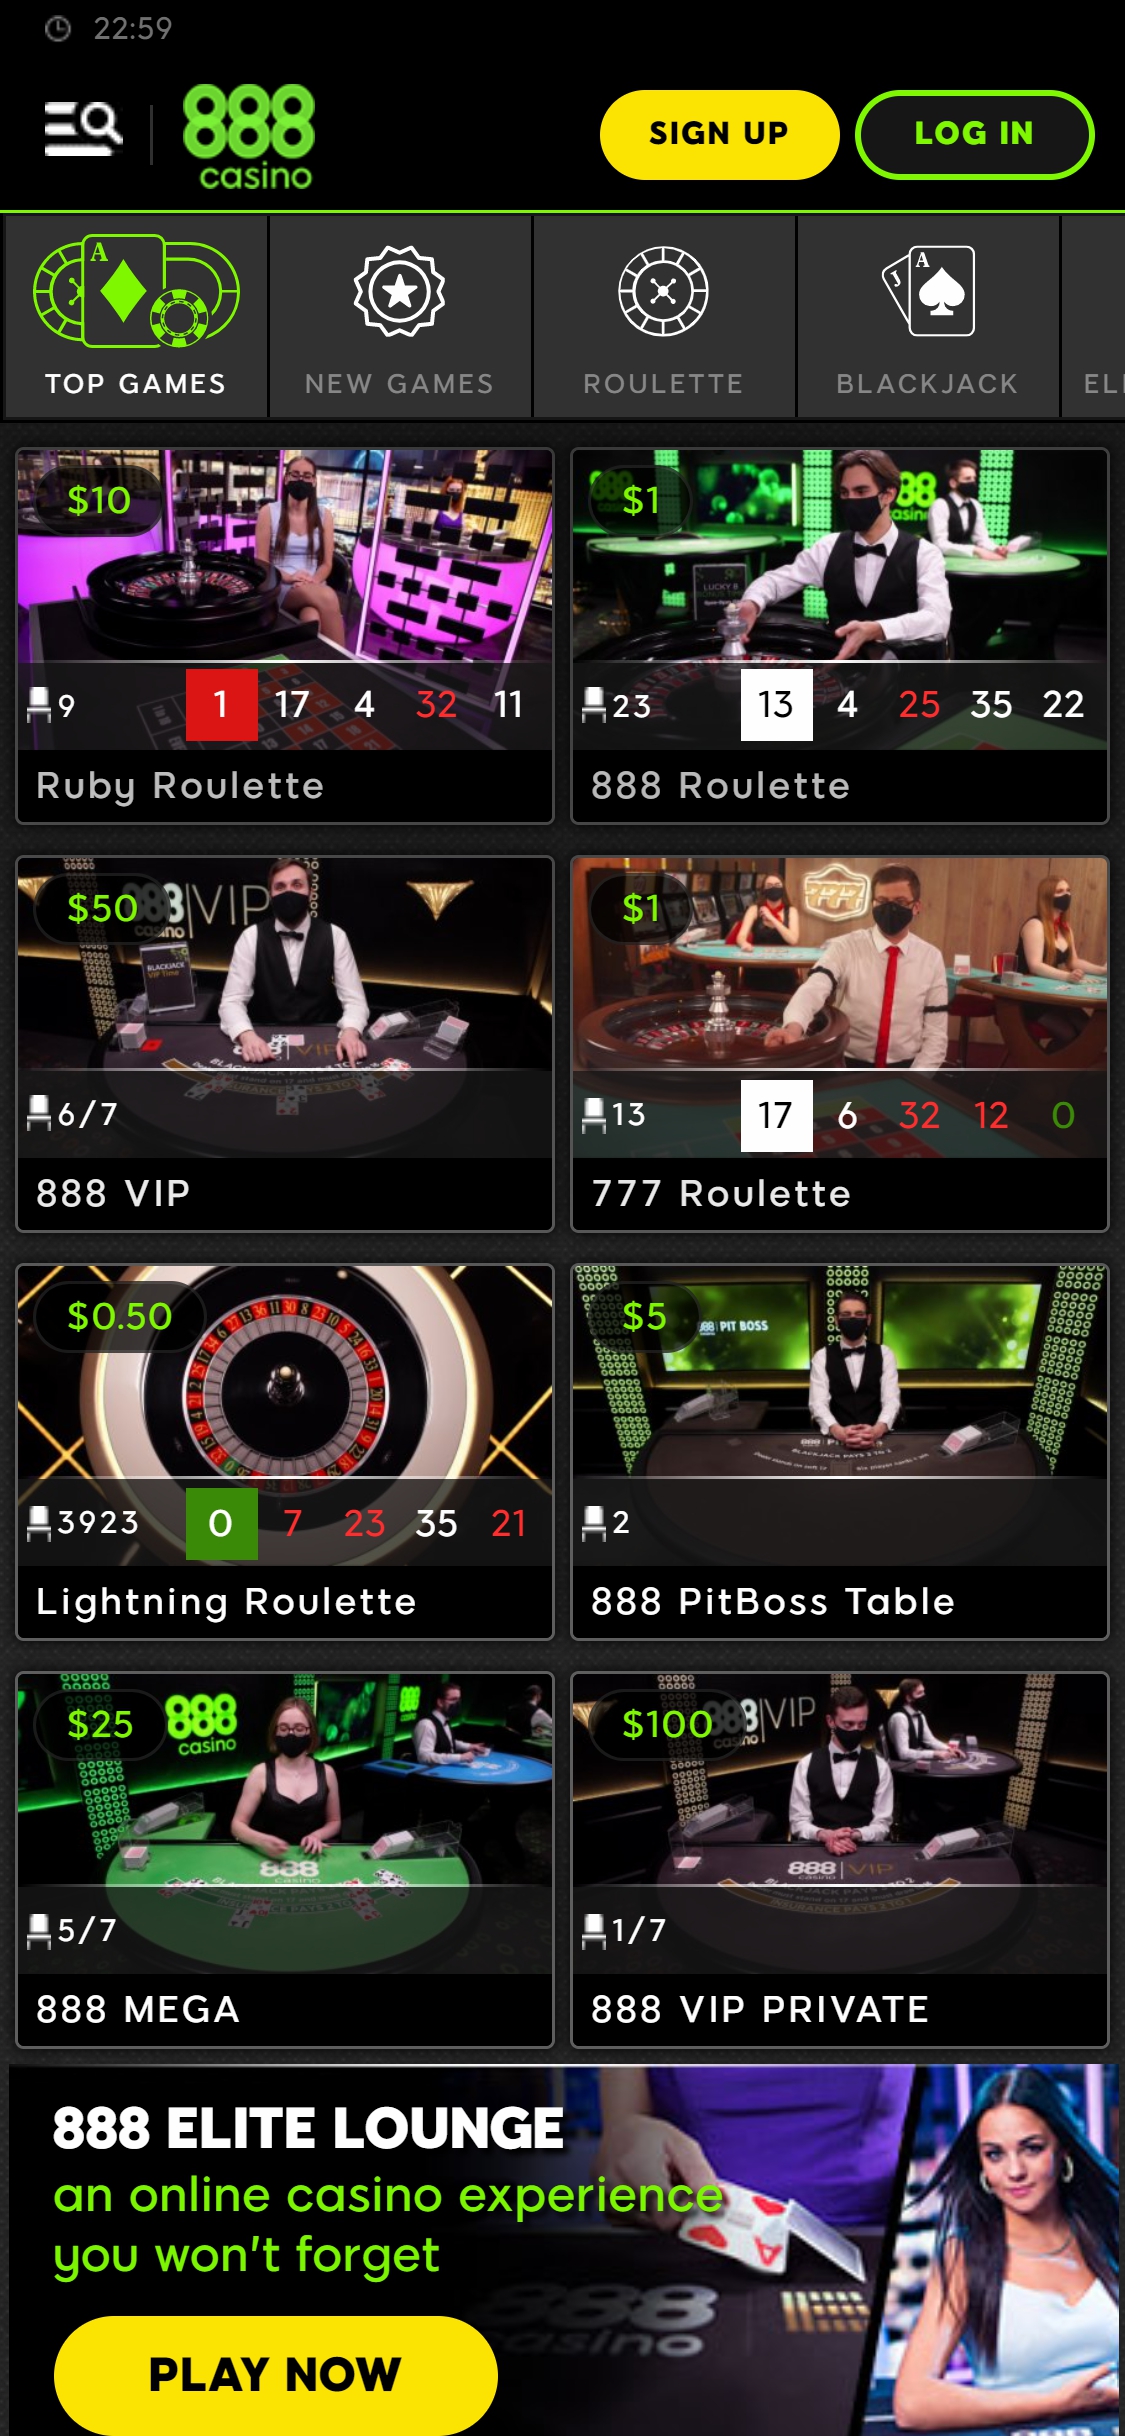 888.com Casino Mobile Live Dealer Games Review